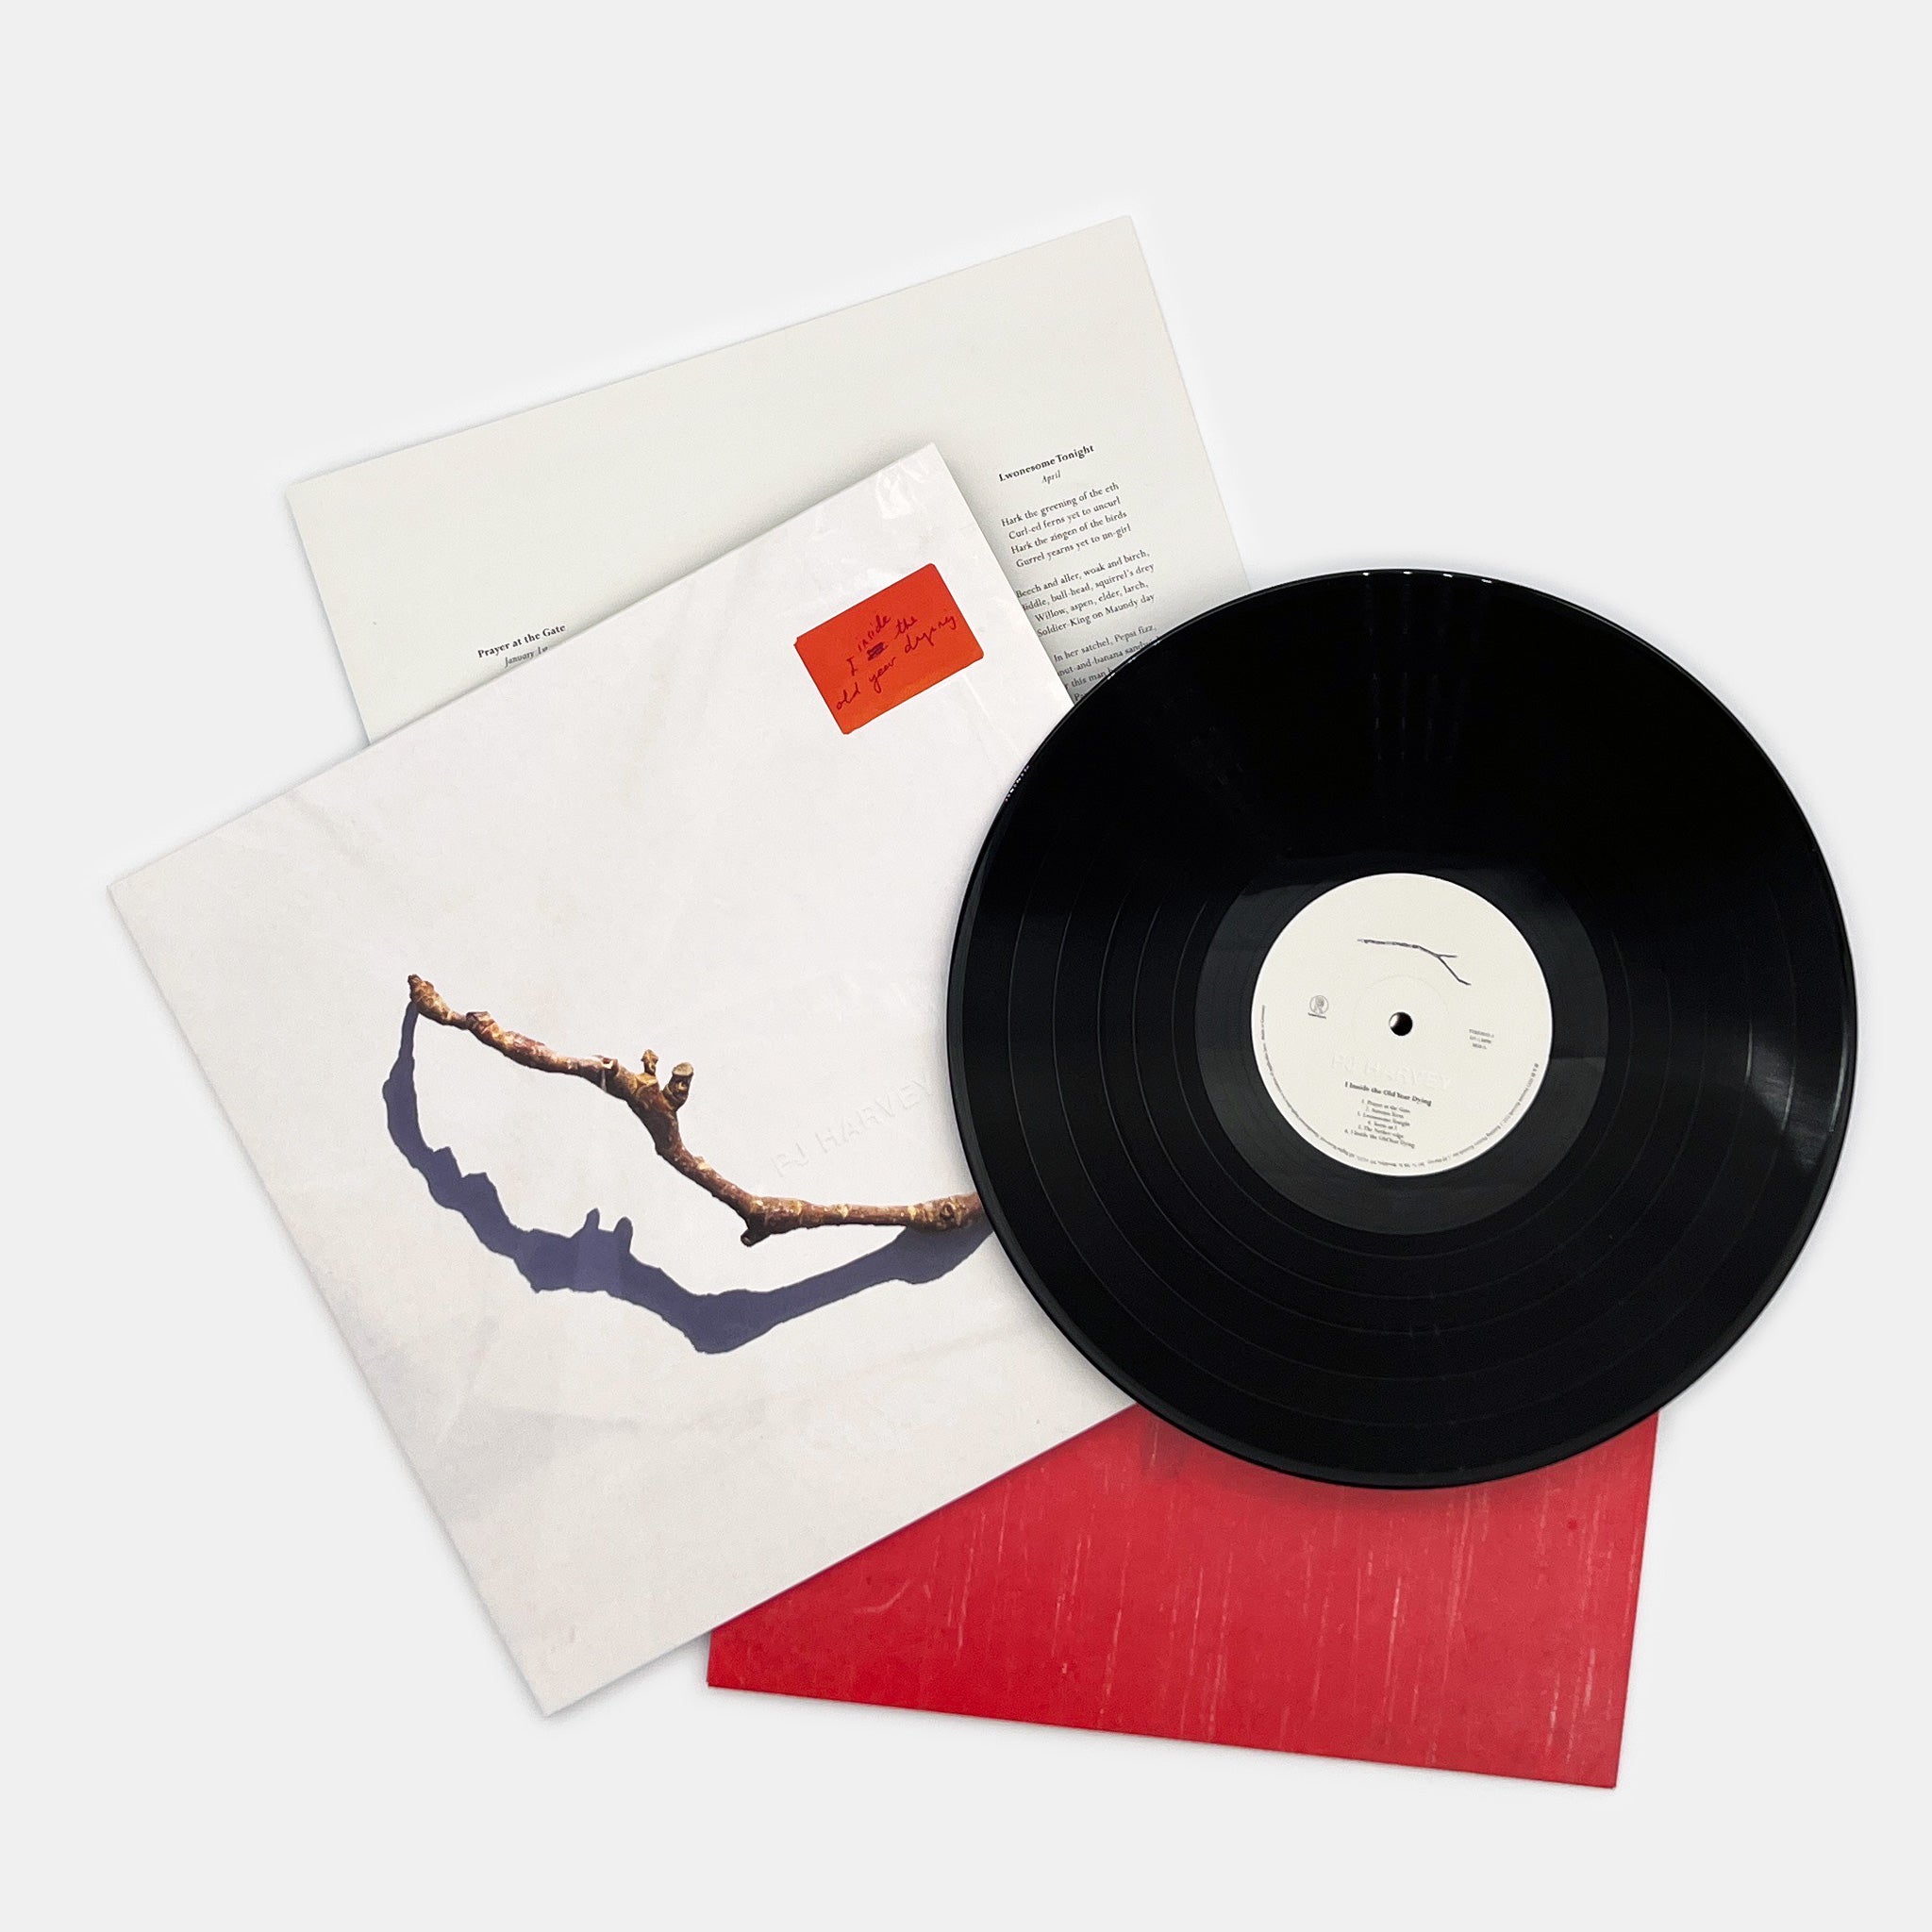 vægt klasselærer afrikansk PJ Harvey - I Inside the Old Year Dying – The Drift Record Shop